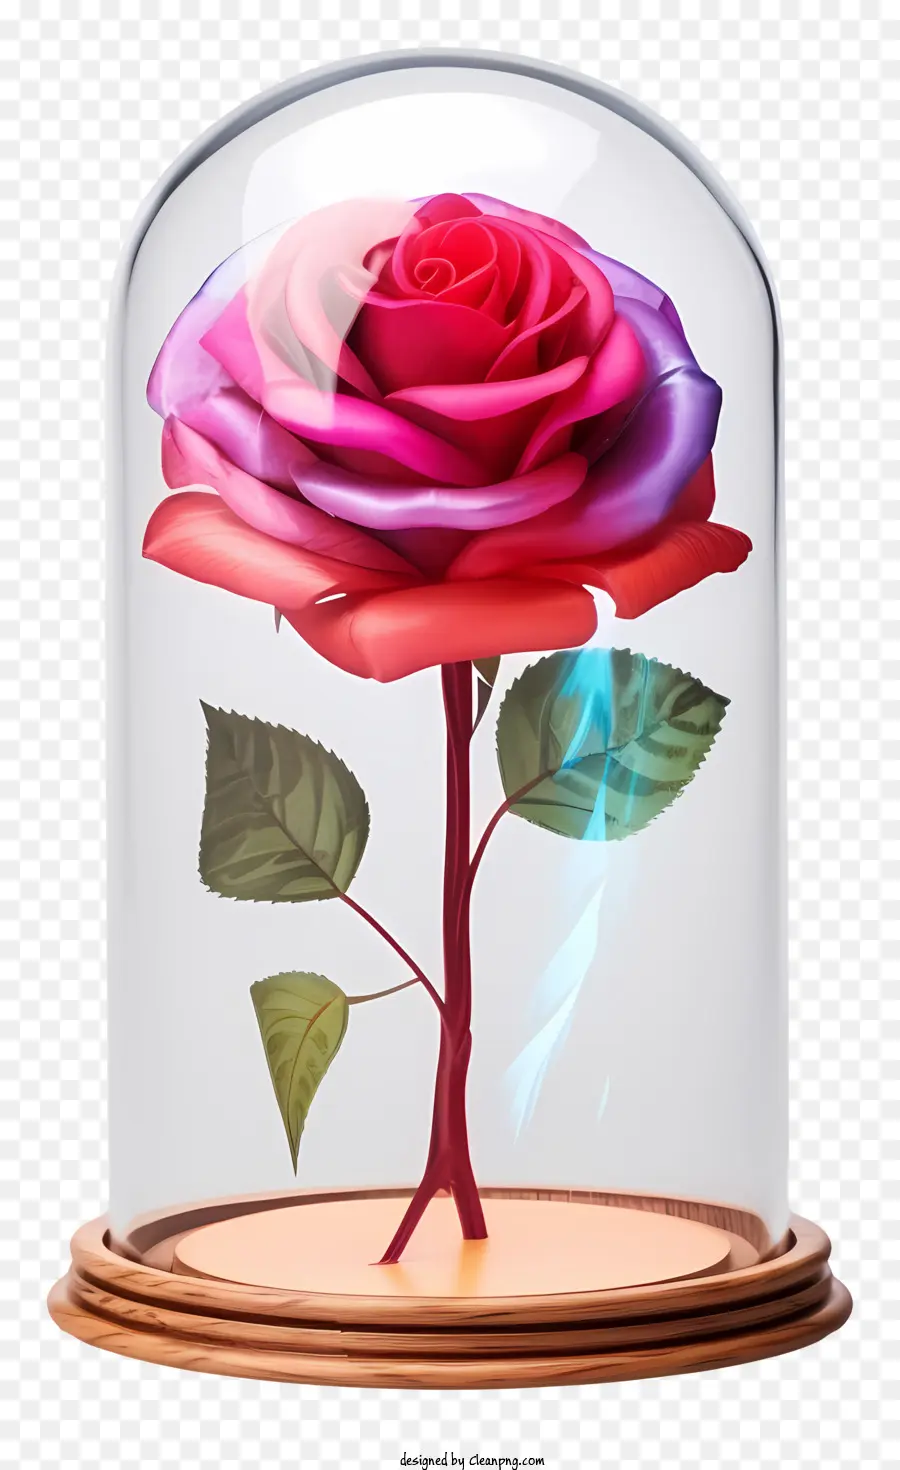 rosa rose - Transparente Glaskuppel zeigt rosa und rote Rose